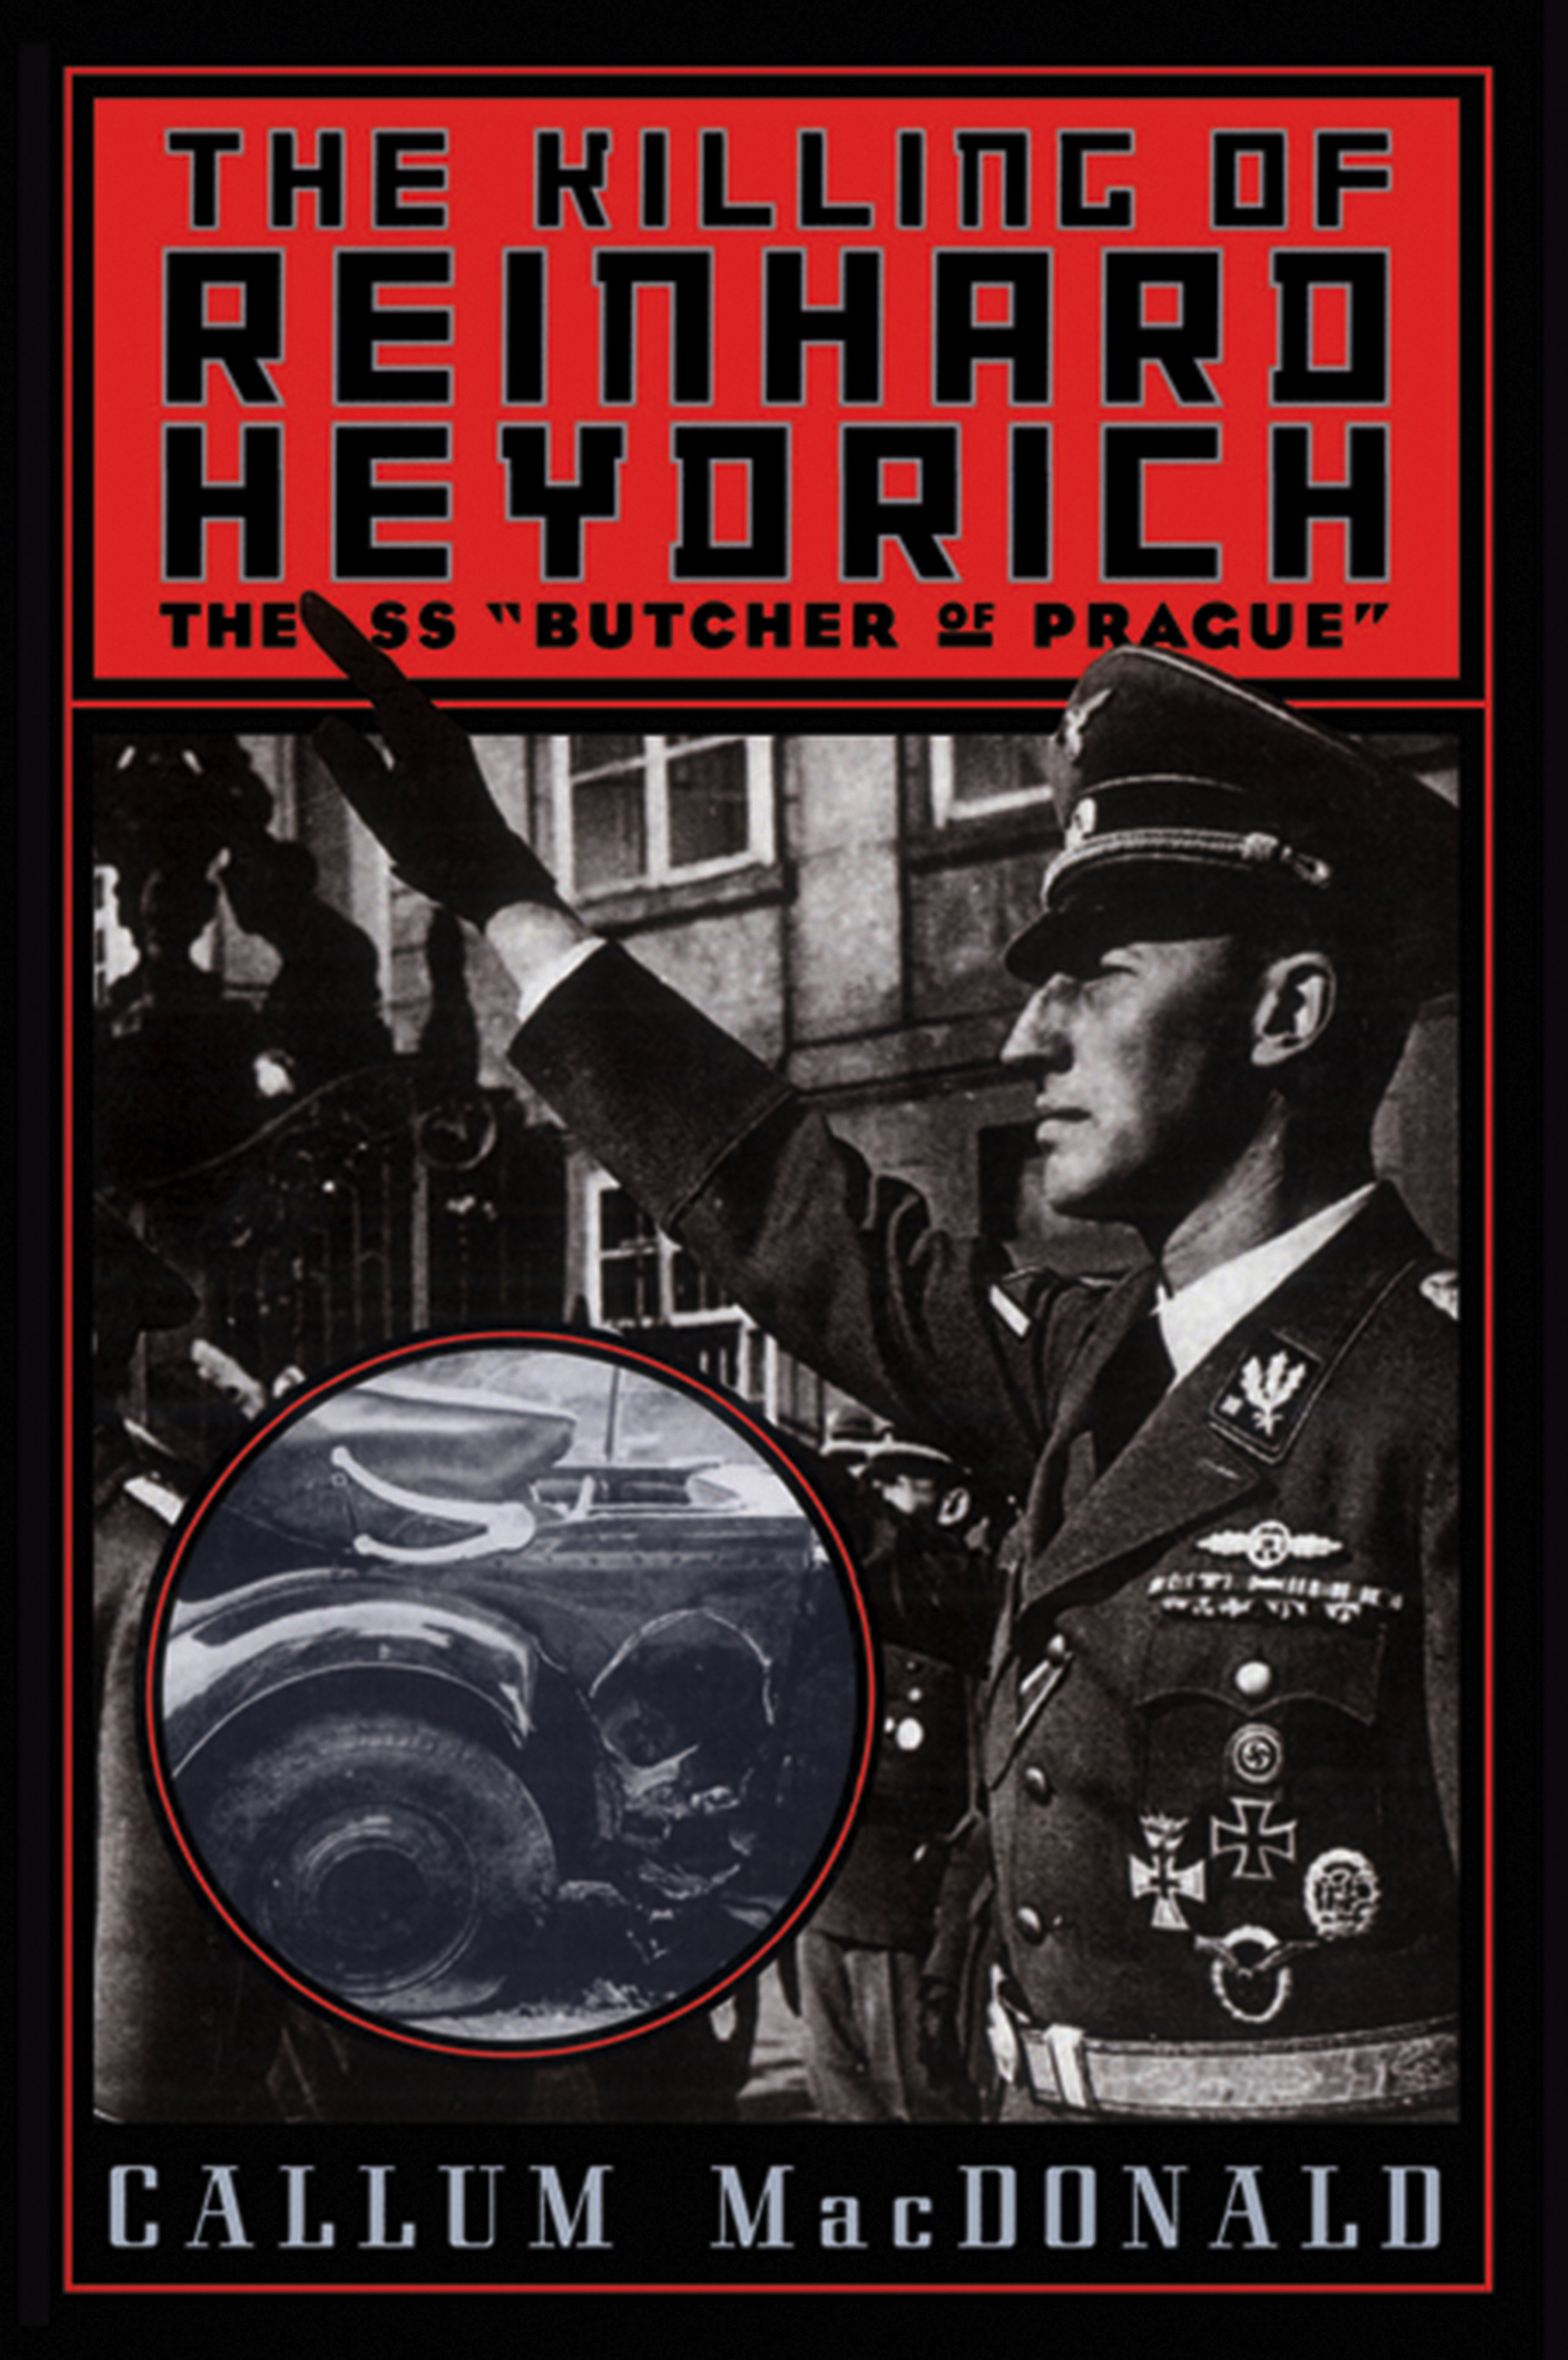 Reinhard heydrich